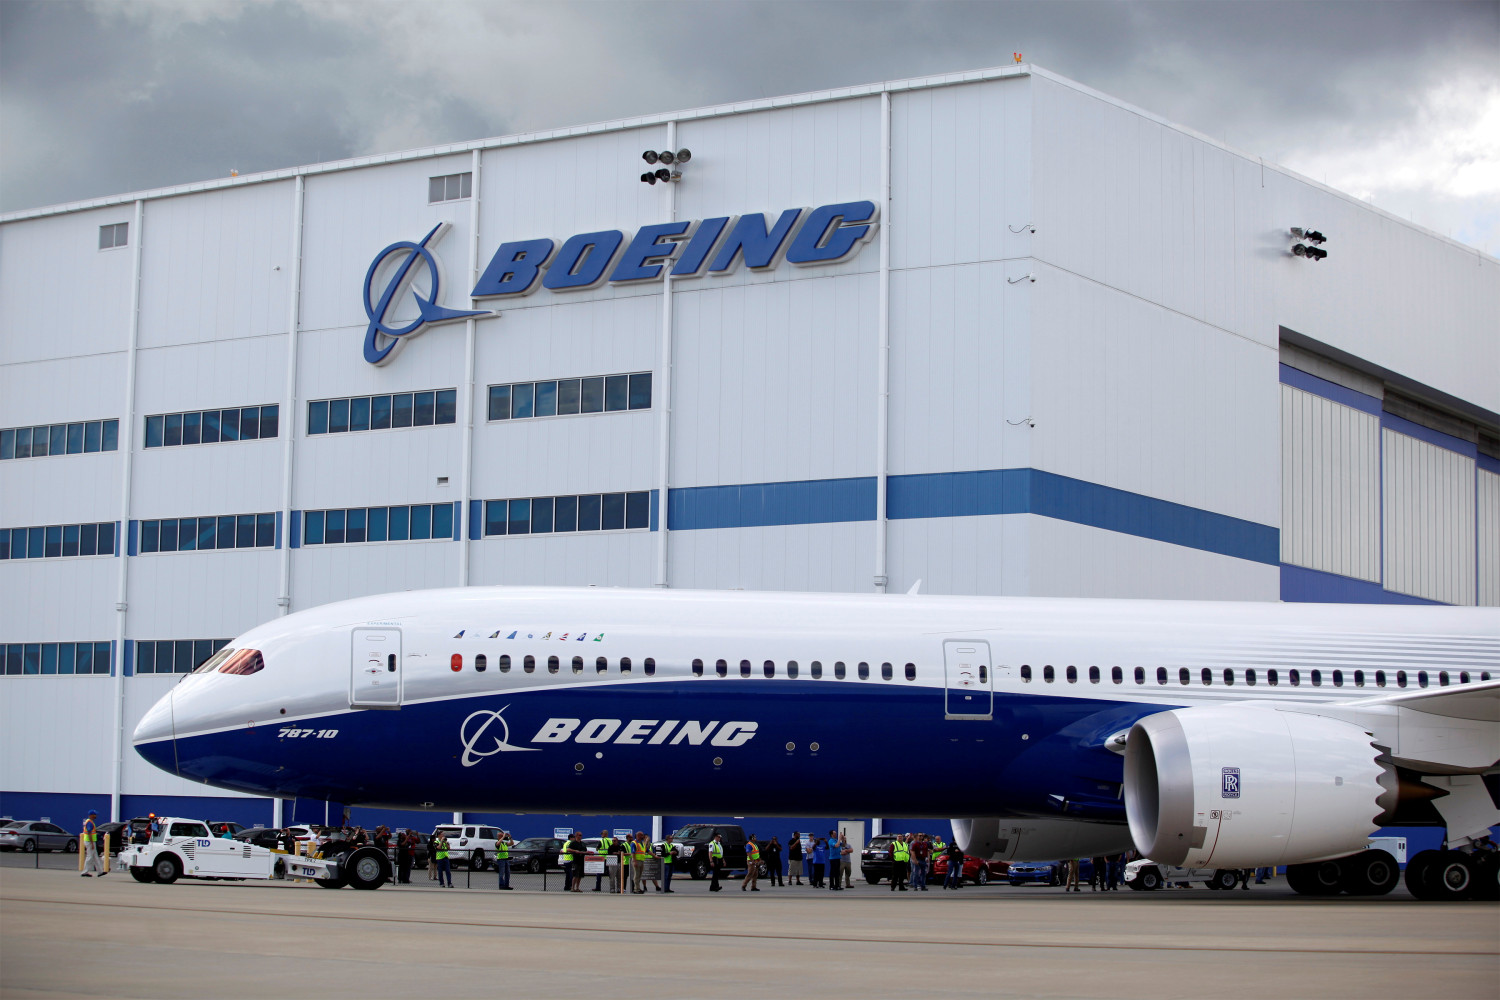 Multa de 200 millones a Boeing por engañar a inversores sobre la seguridad del 737 MAX